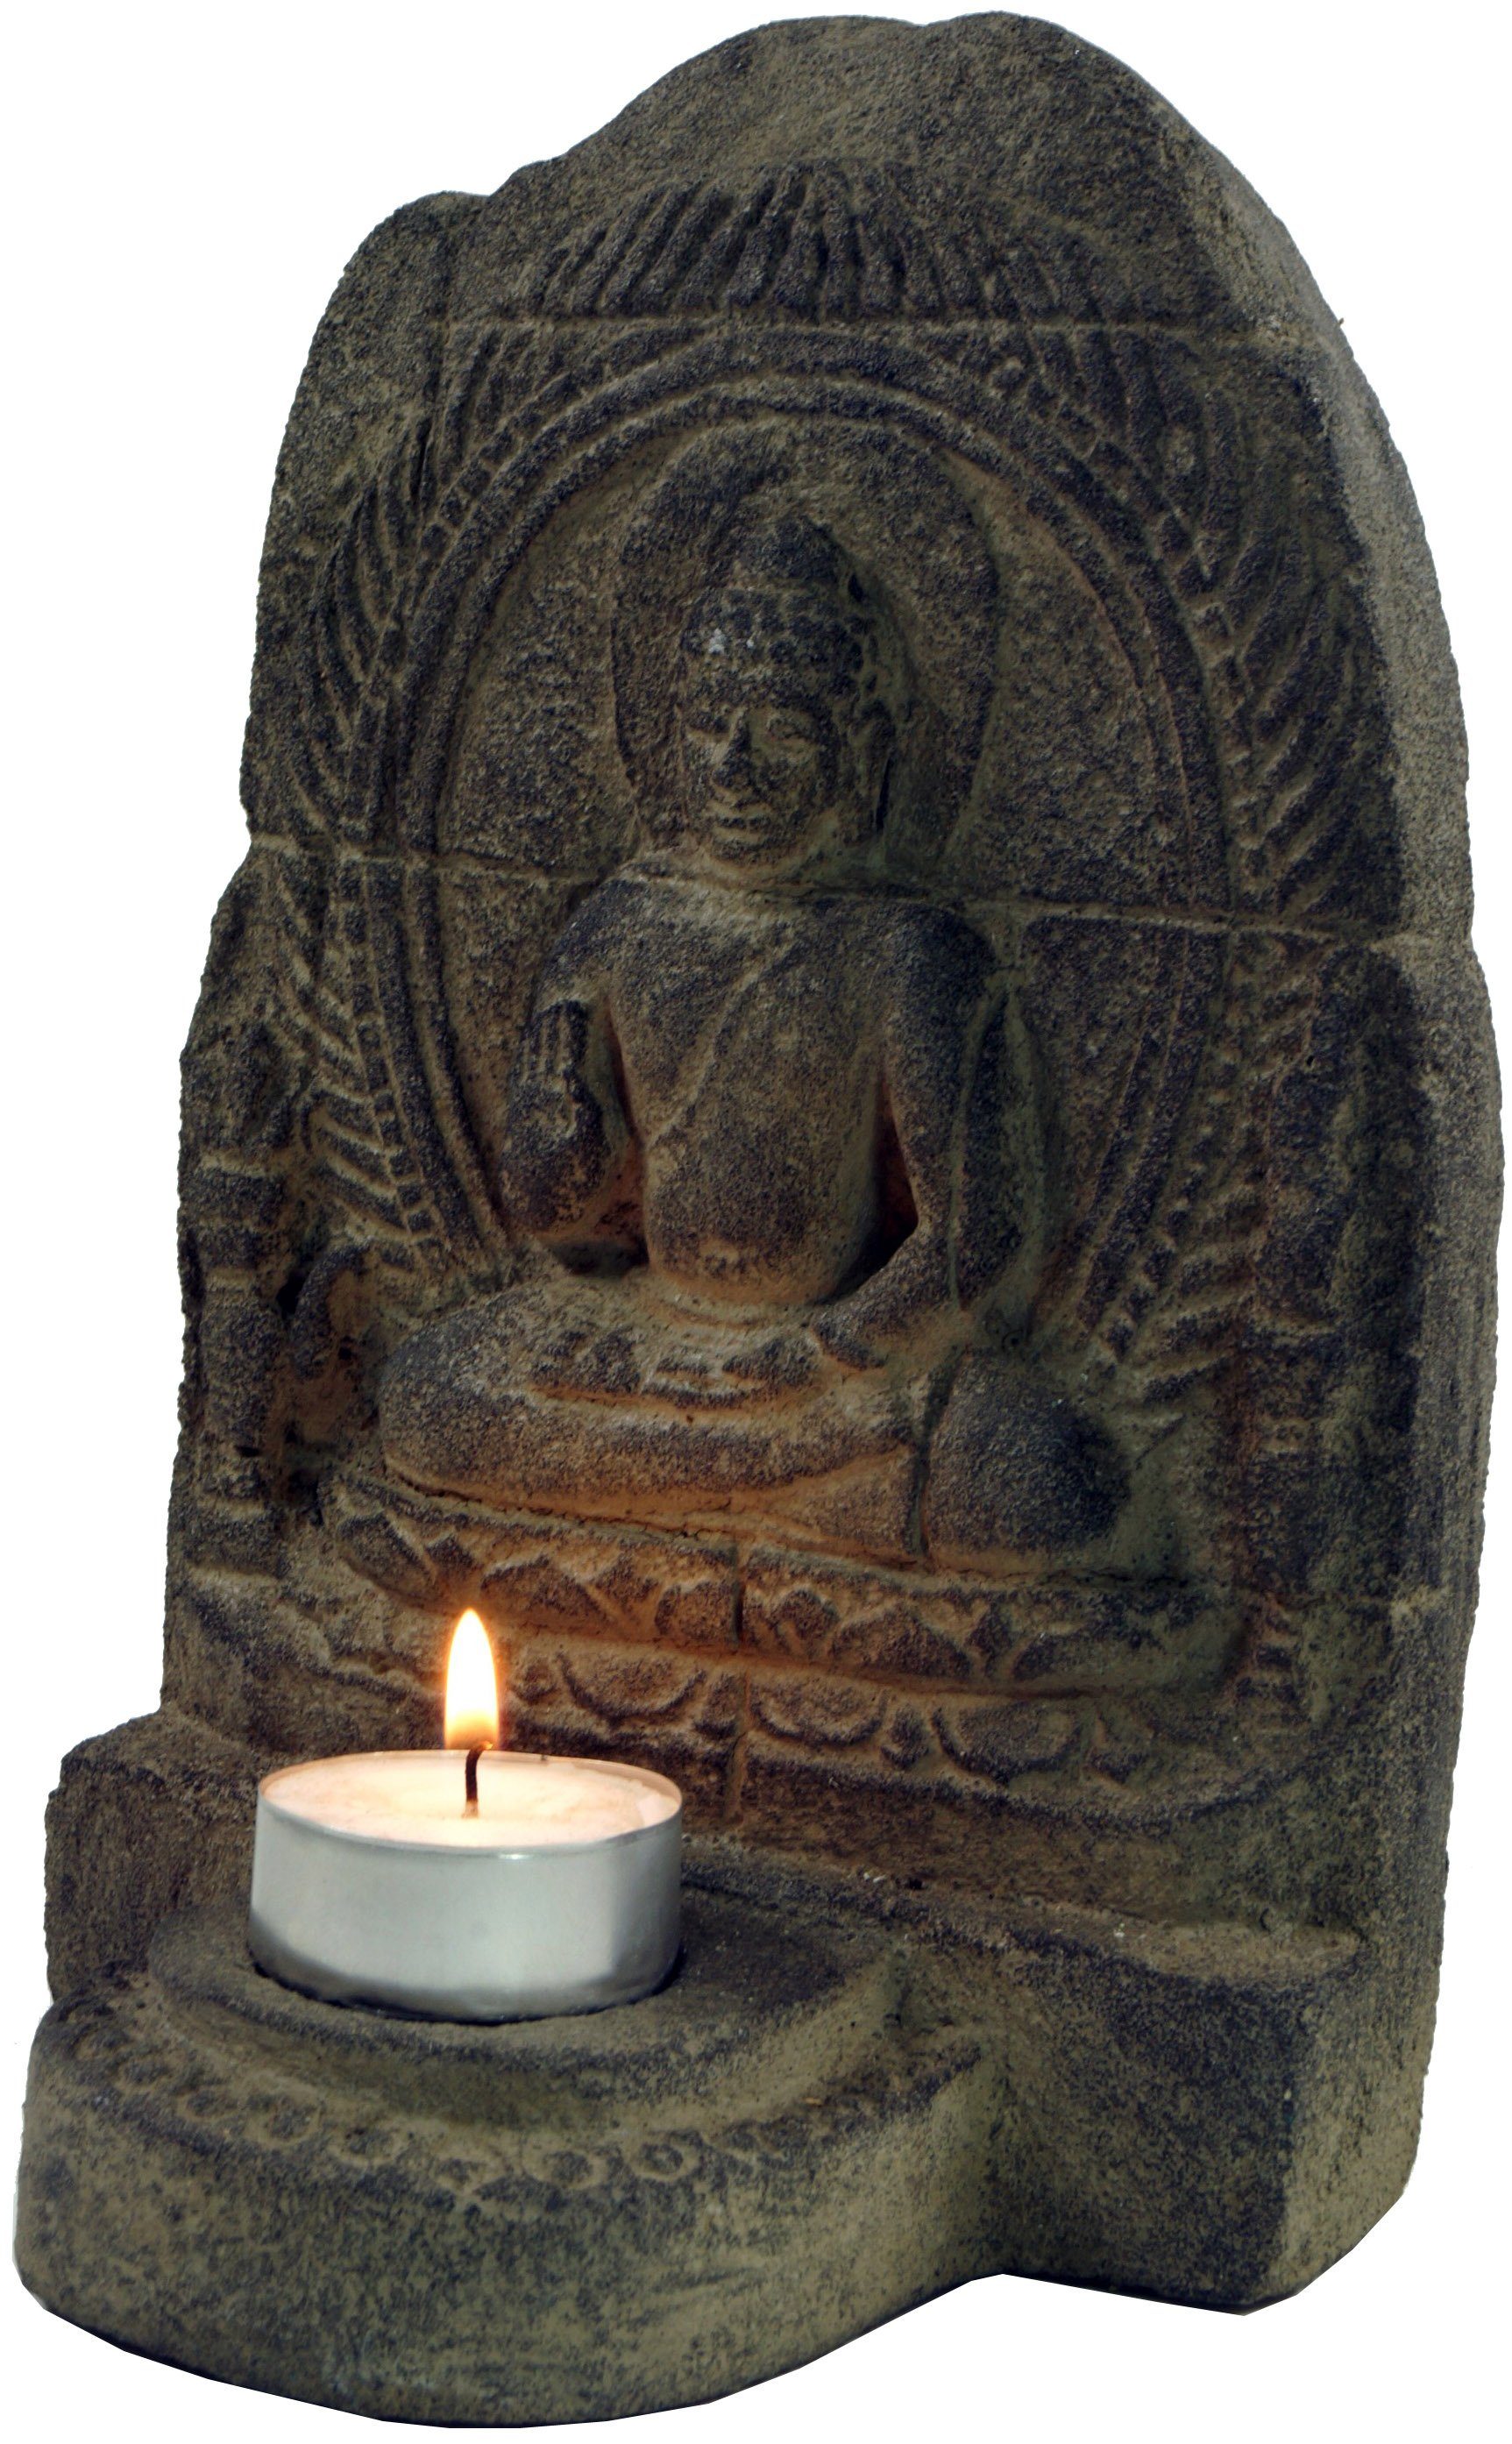 Guru-Shop Buddhafigur Minitempel, Buddhafigur, Teelichthalter aus Stein